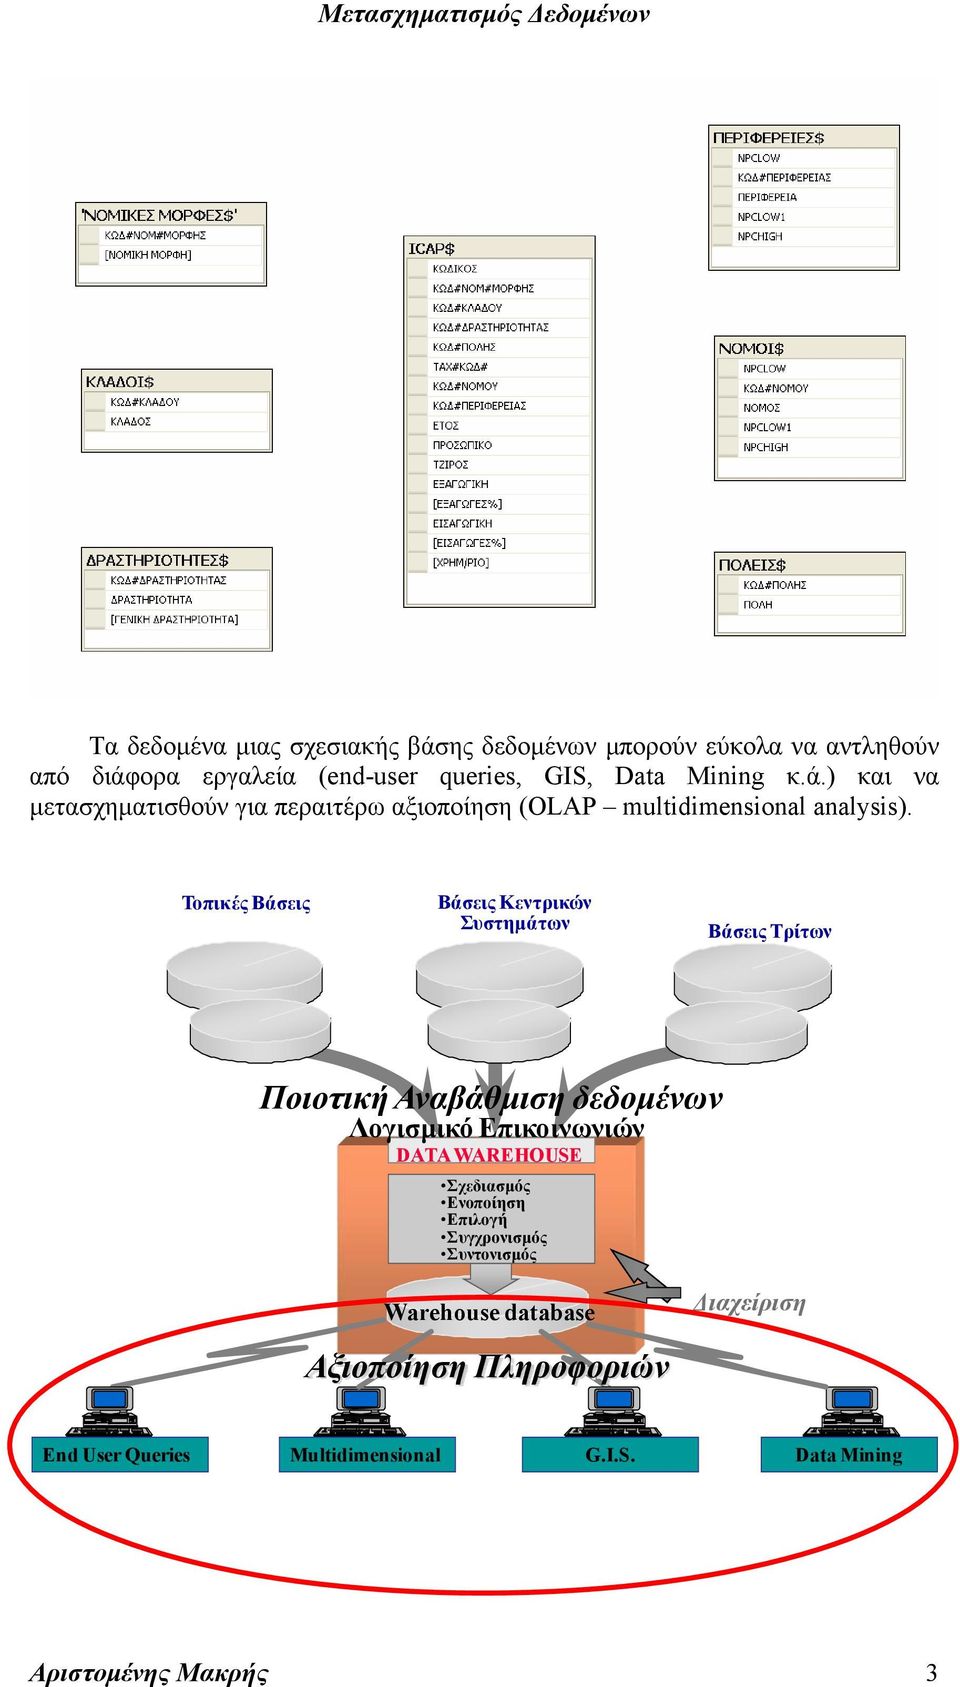 Τοπικές Βάσεις Βάσεις Κεντρικών Συστημάτων Βάσεις Τρίτων Ποιοτική Αναβάθμιση δεδομένων Λογισμικό Επικοινωνιών DATA WAREHOUSE